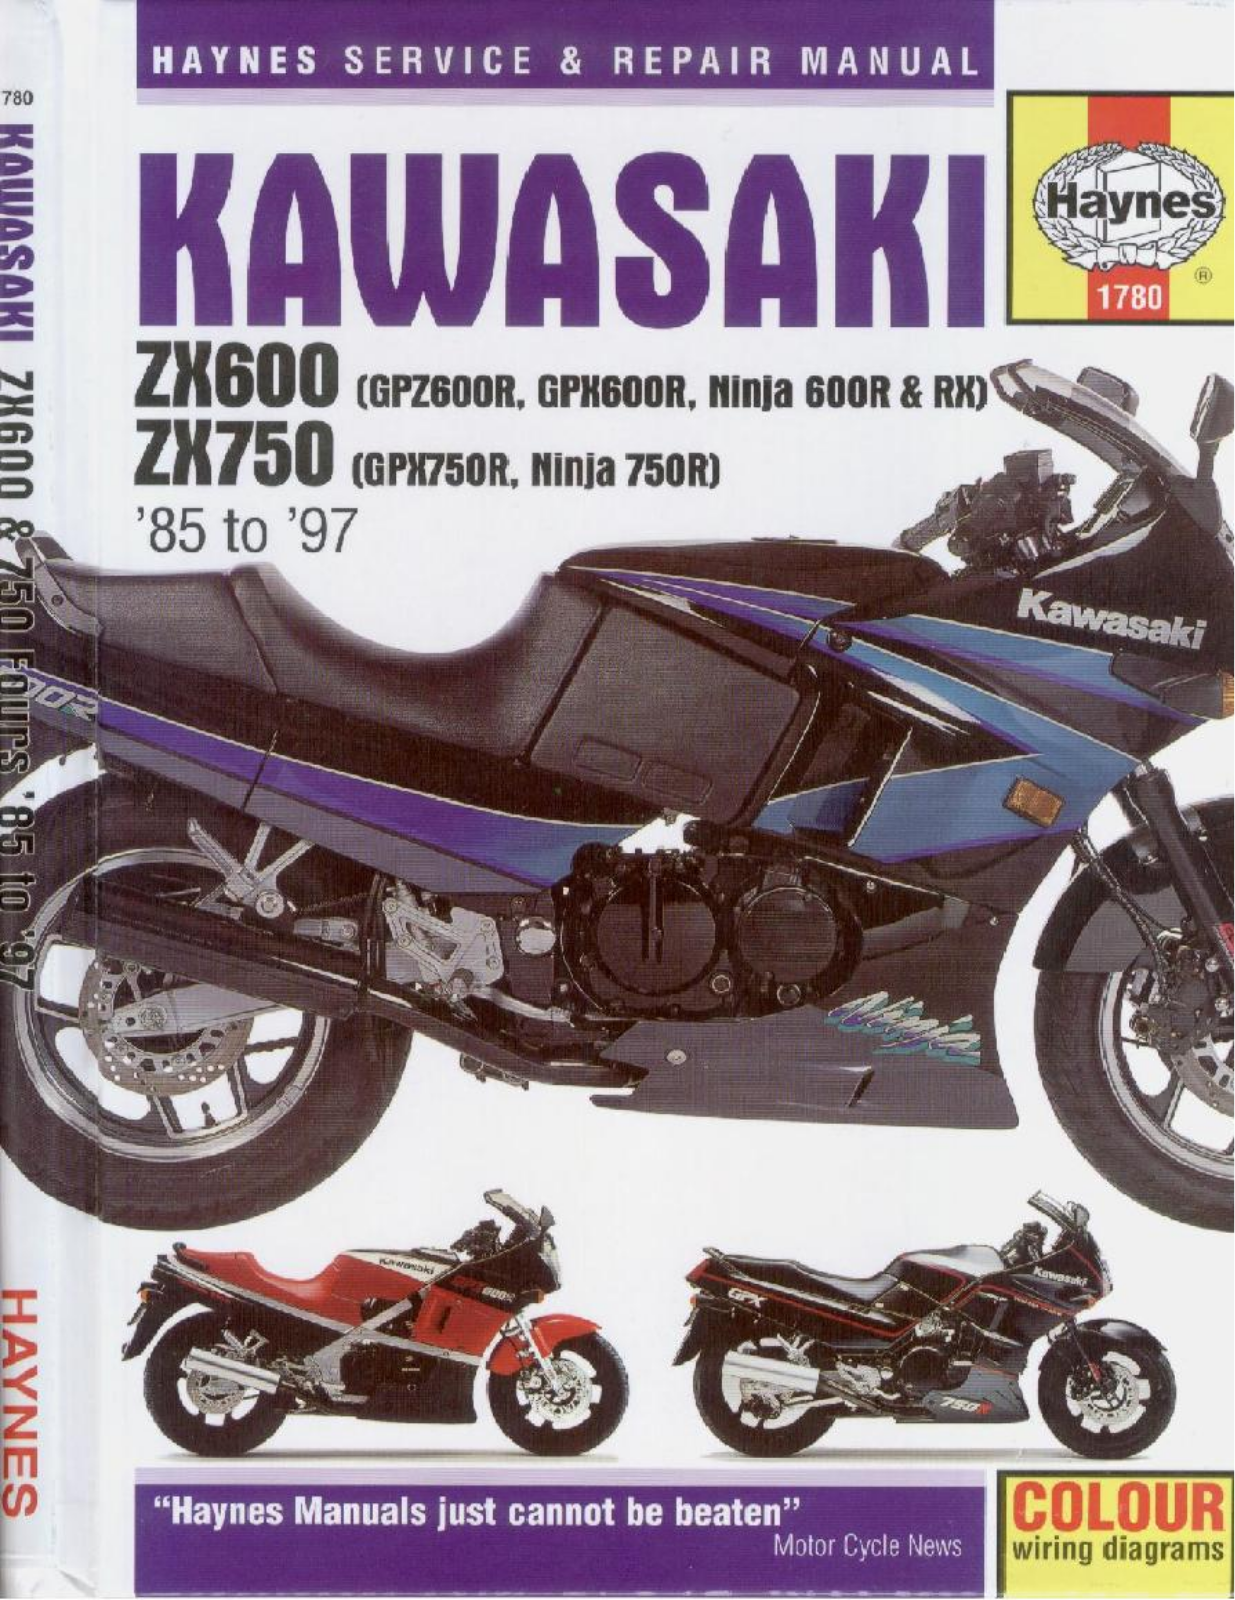 Kawasaki GPz 600R, GPX600 R, Ninja 600 R  RX, GPX750 R, Ninja 750 R 85-97 Service Manual